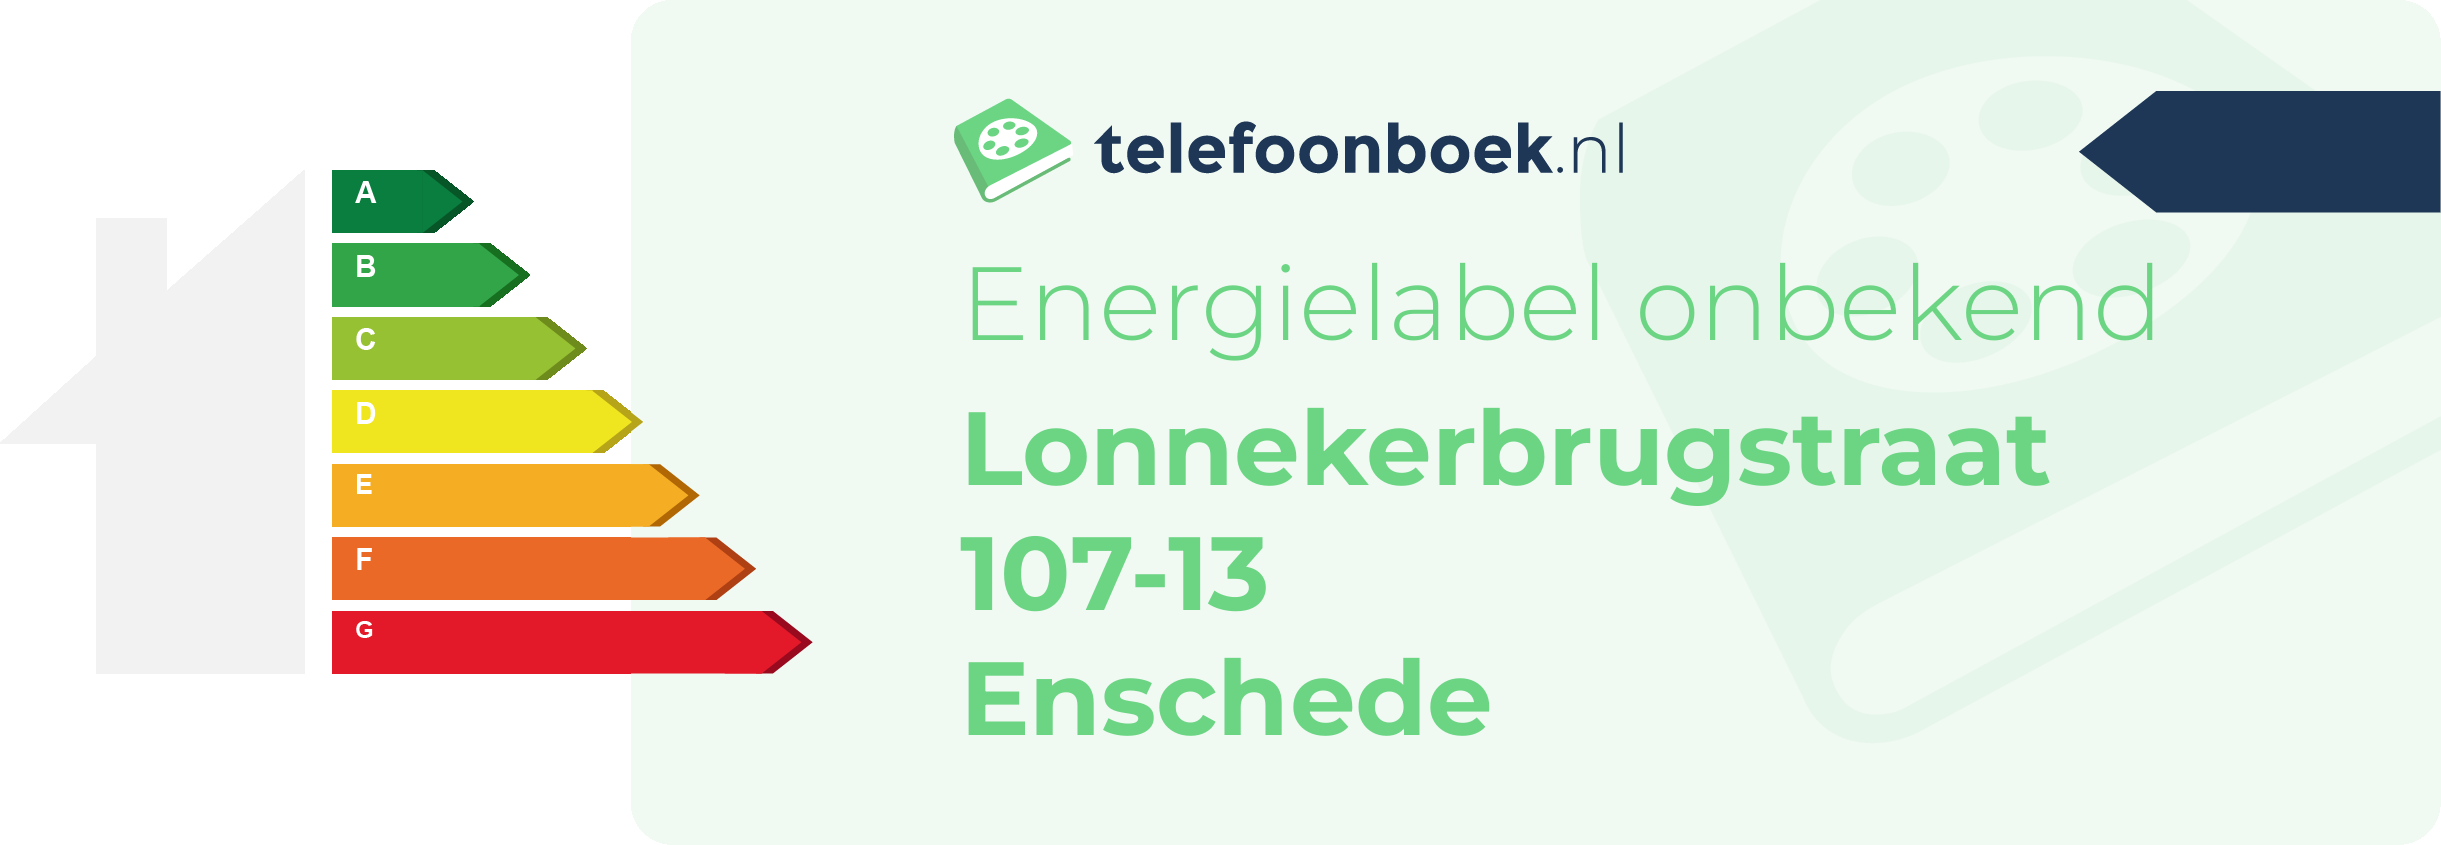 Energielabel Lonnekerbrugstraat 107-13 Enschede